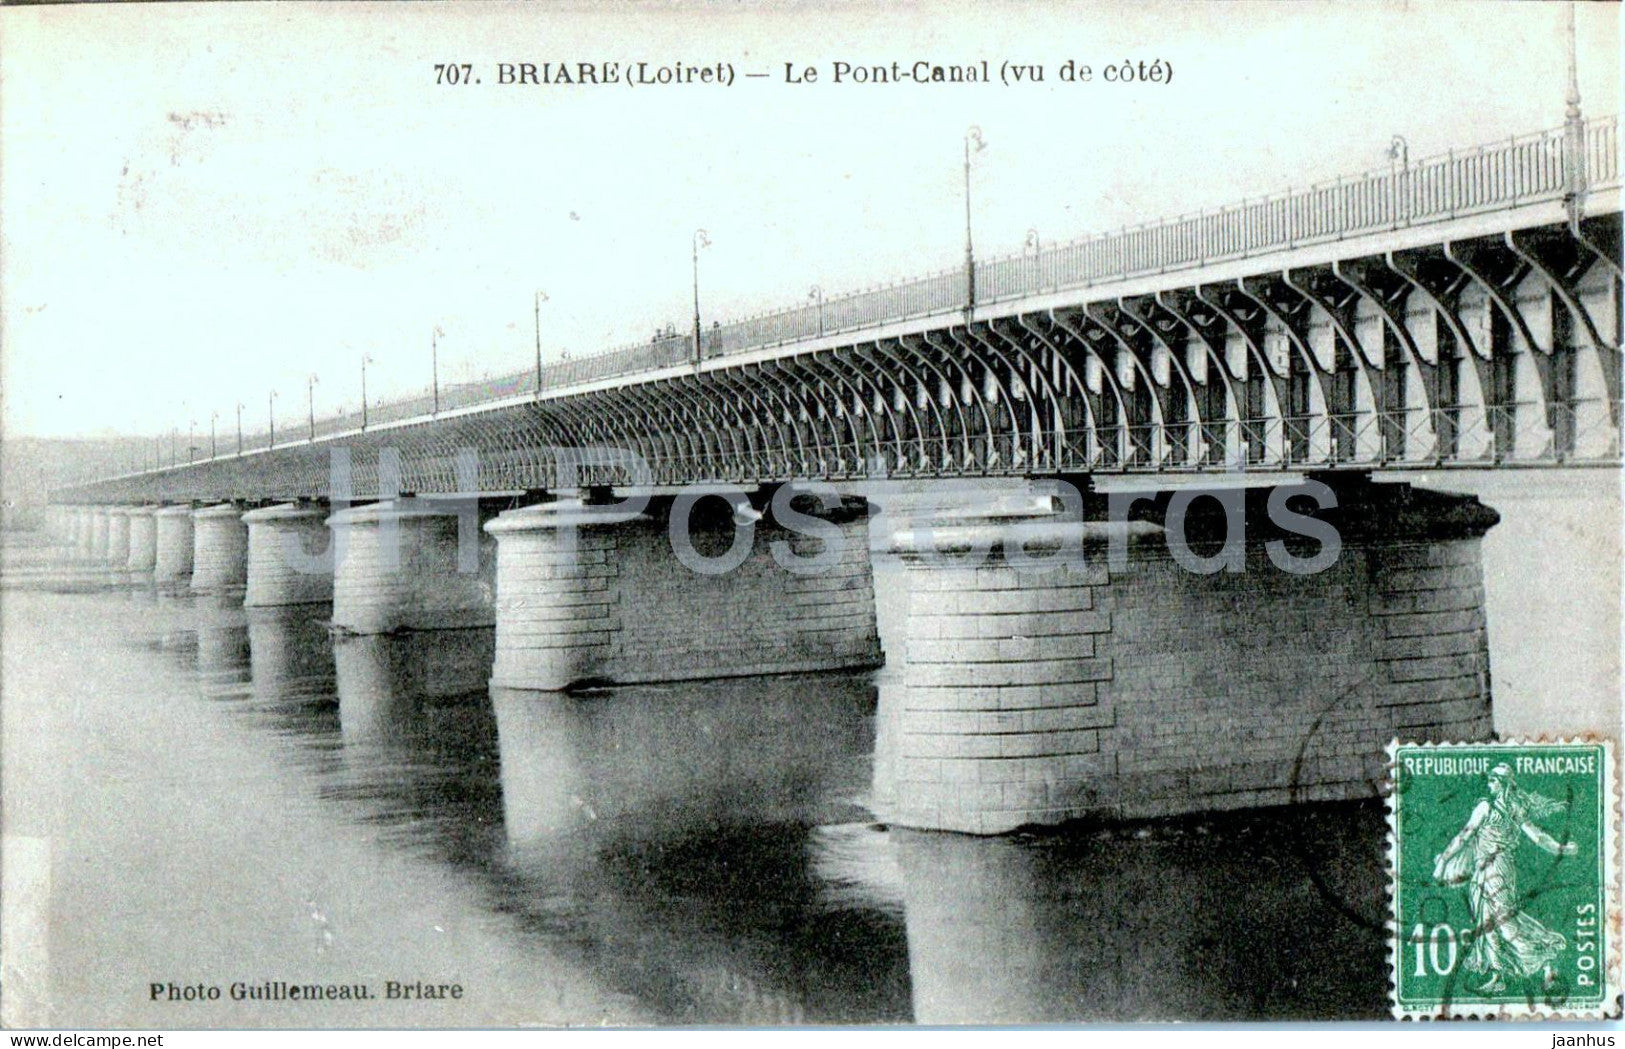 Briare - Le Pont Canal - vu de Cote - bridge - 707 - old postcard - France - used - JH Postcards